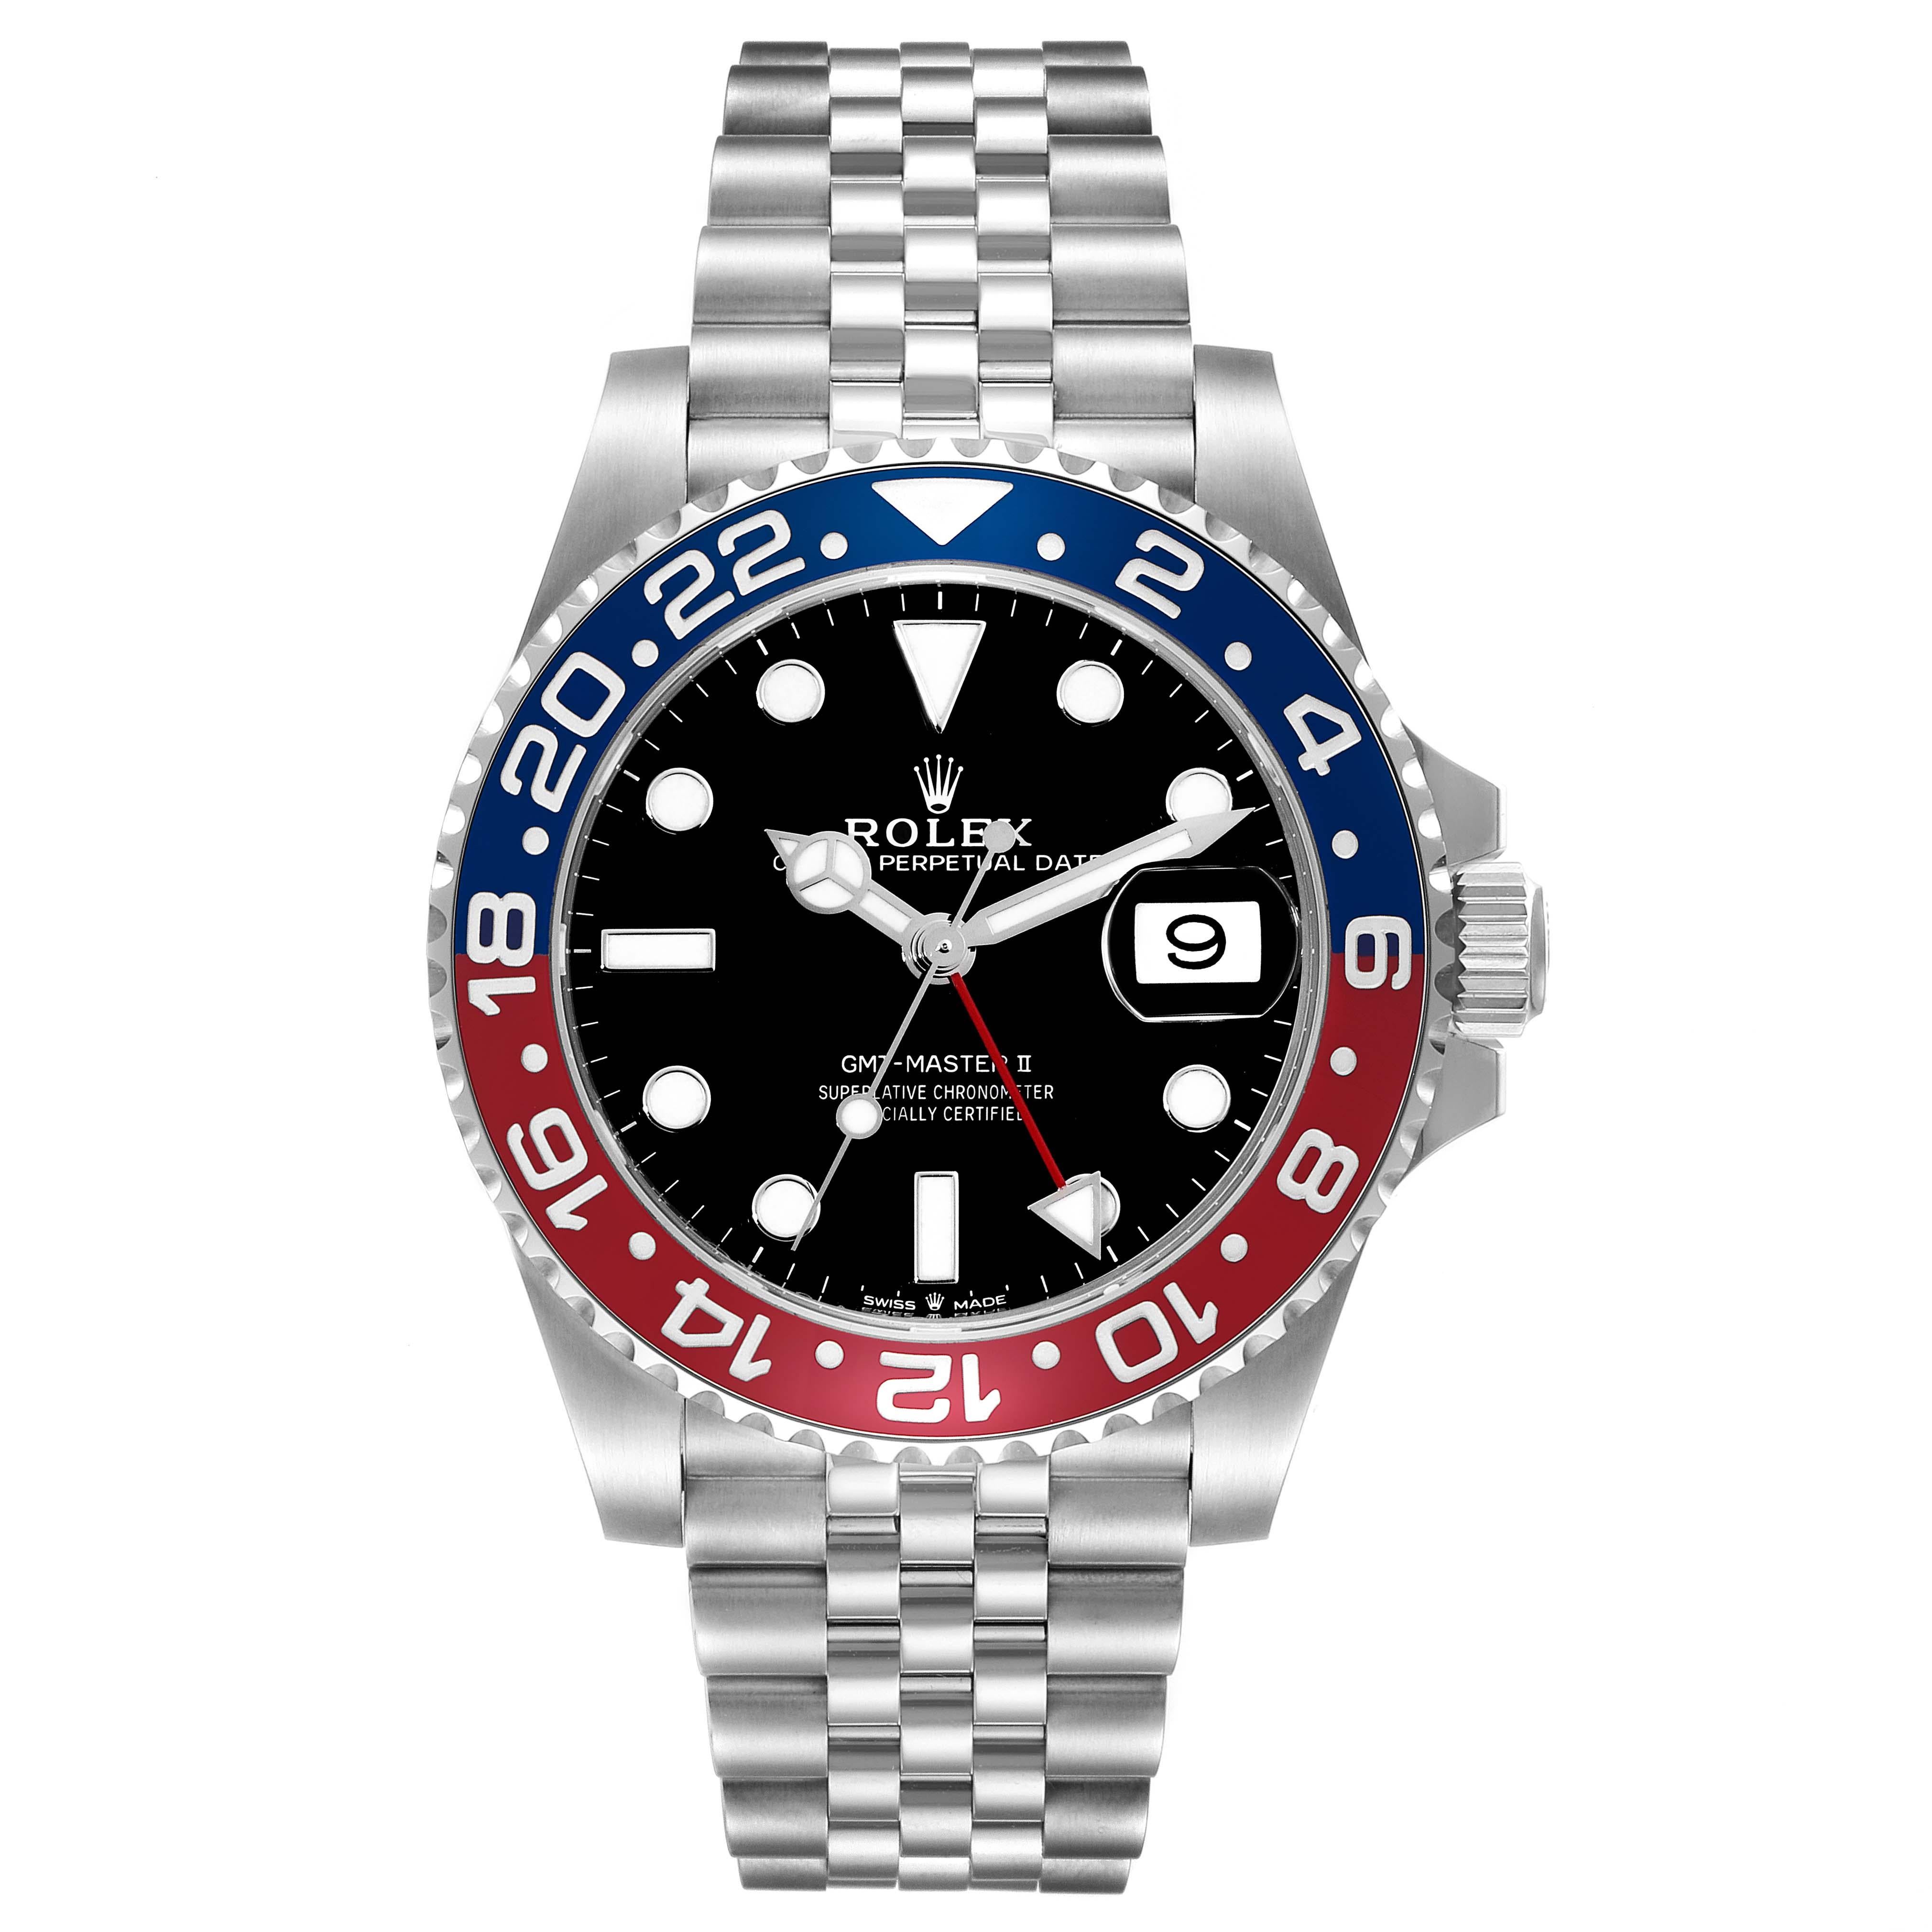 Rolex GMT Master II Blue Red Pepsi Bezel Steel Mens Watch 126710. Mouvement automatique à remontage automatique, officiellement certifié chronomètre. Boîtier en acier inoxydable de 40 mm de diamètre. Logo Rolex sur la couronne. Lunette tournante